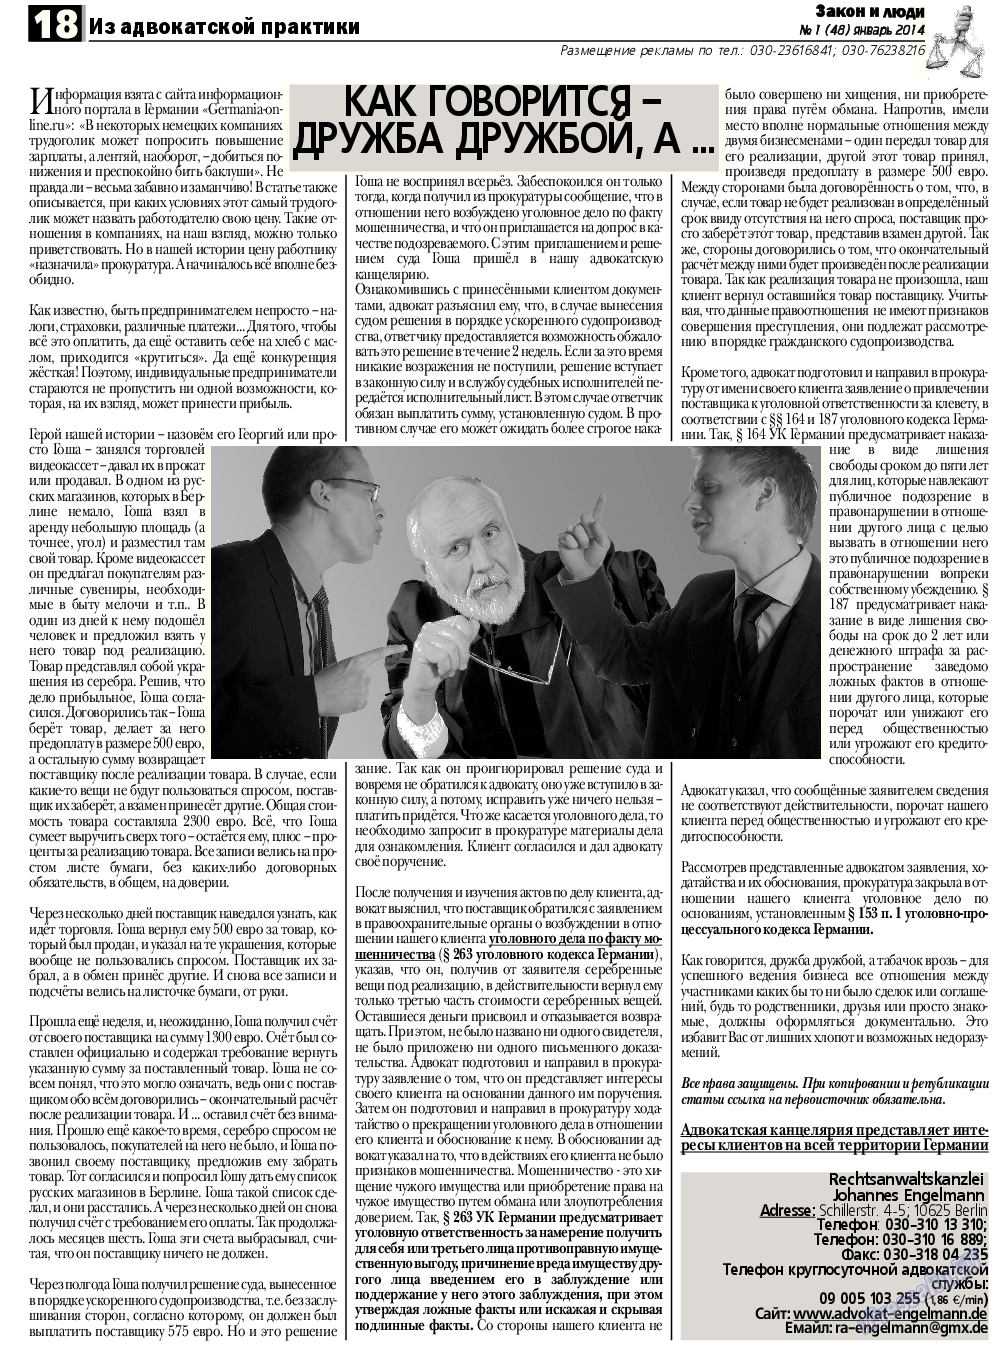 Закон и люди, газета. 2014 №1 стр.18